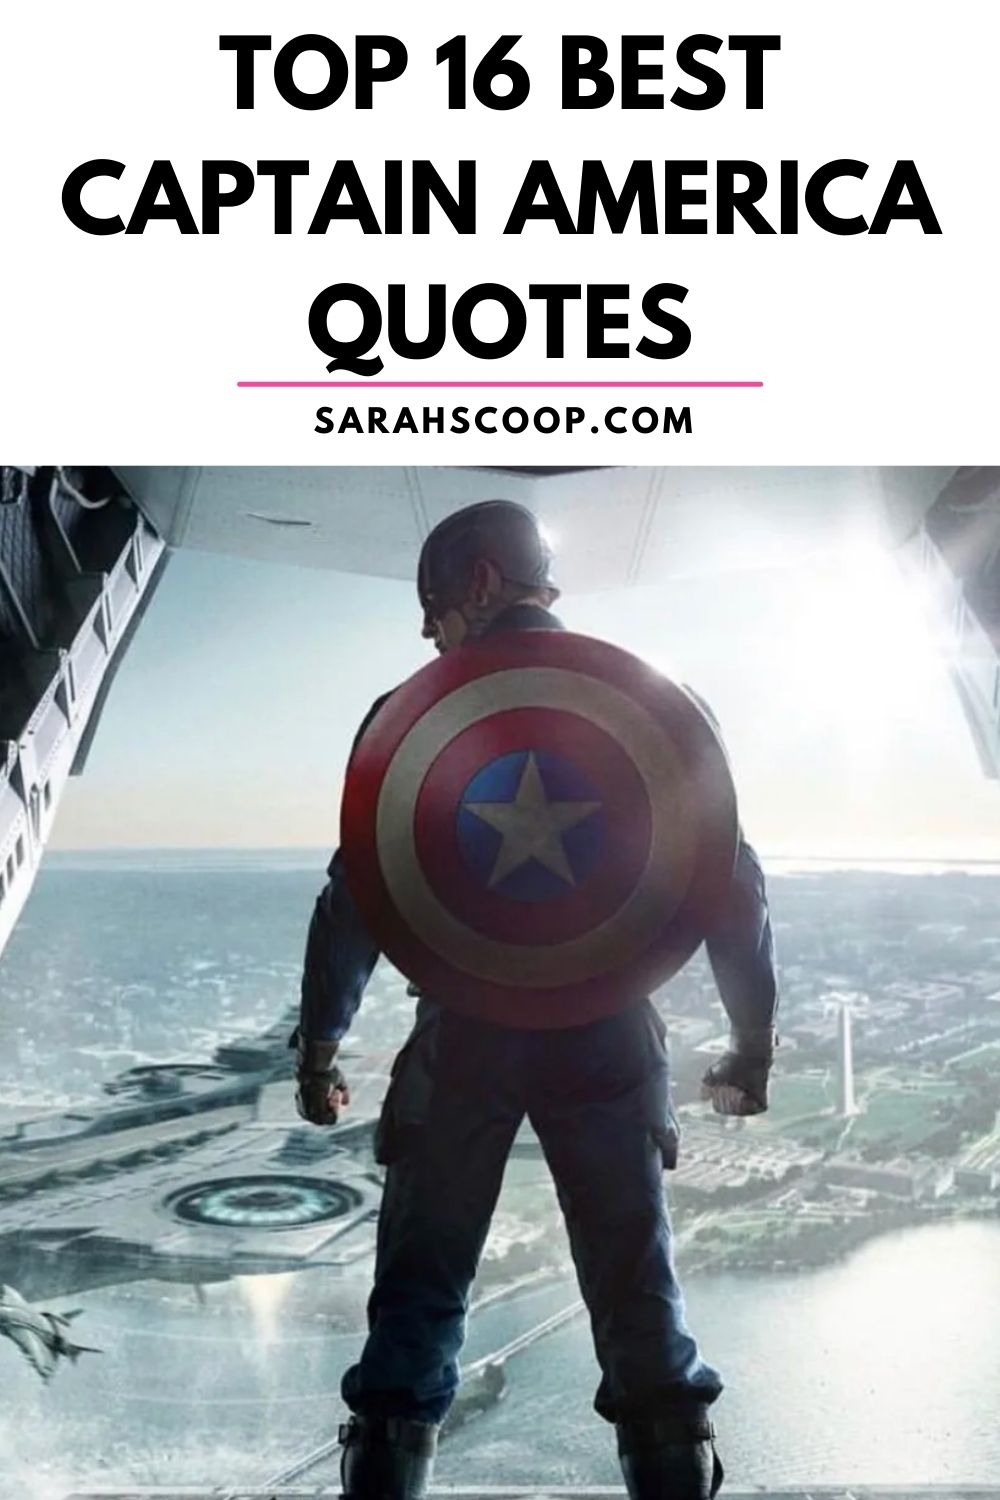 Top 16 Best Captain America Quotes - Sarah Scoop